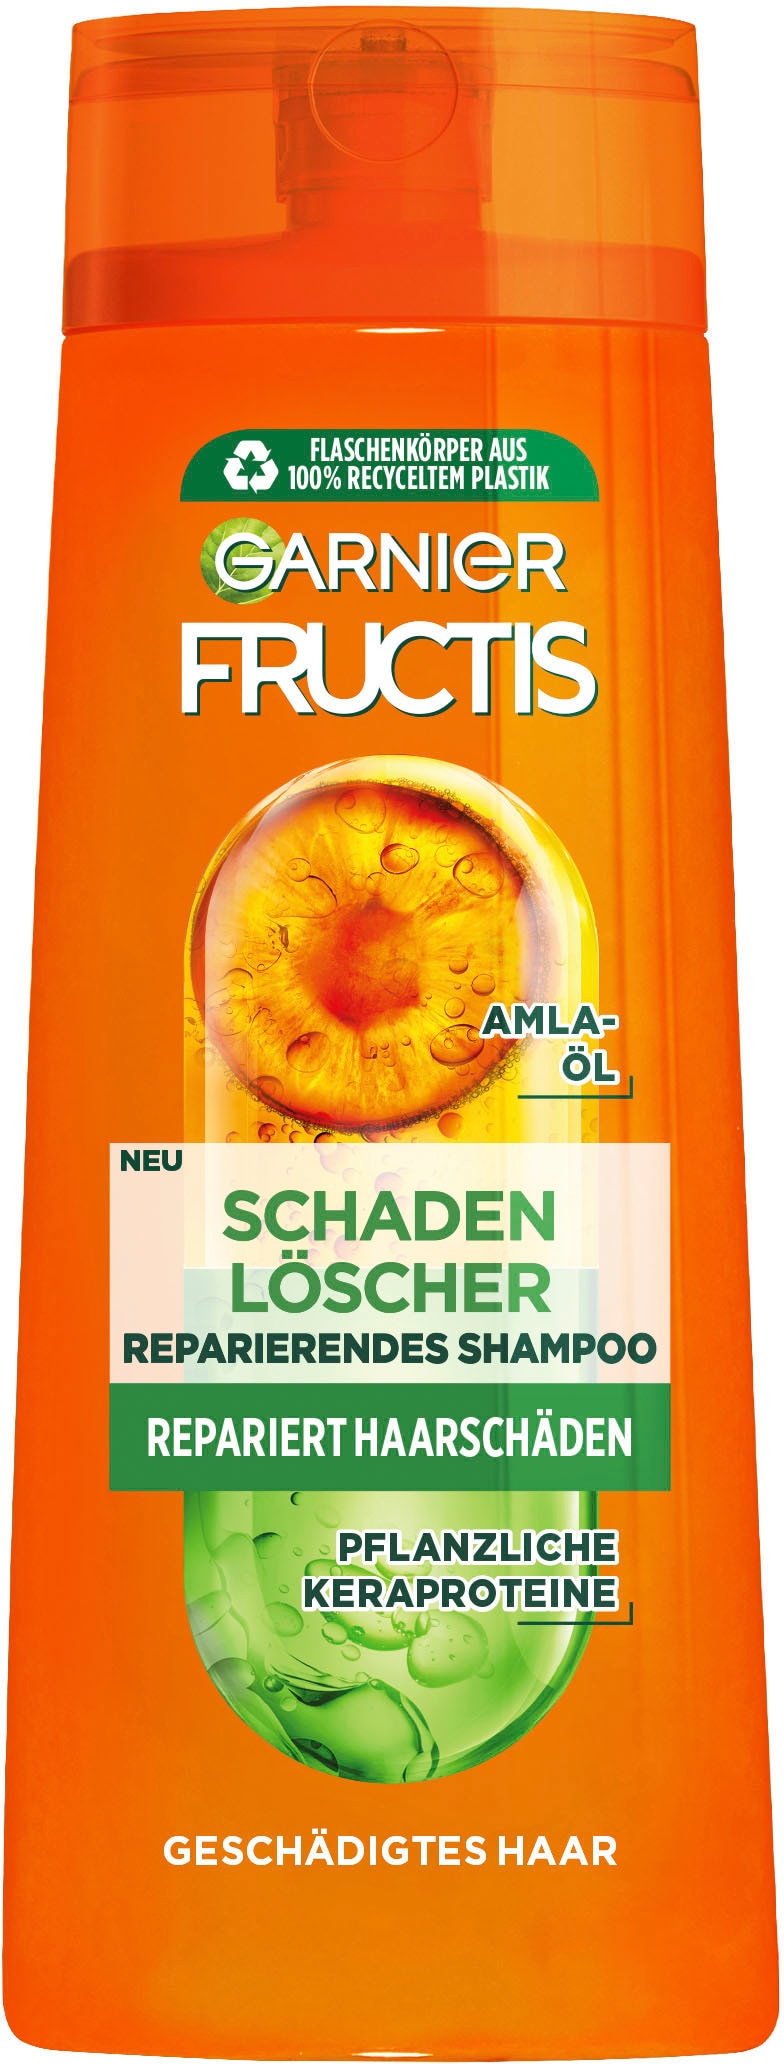 GARNIER Haarshampoo »Garnier Fructis OTTO Schadenlöscher Shop Online Shampoo« im